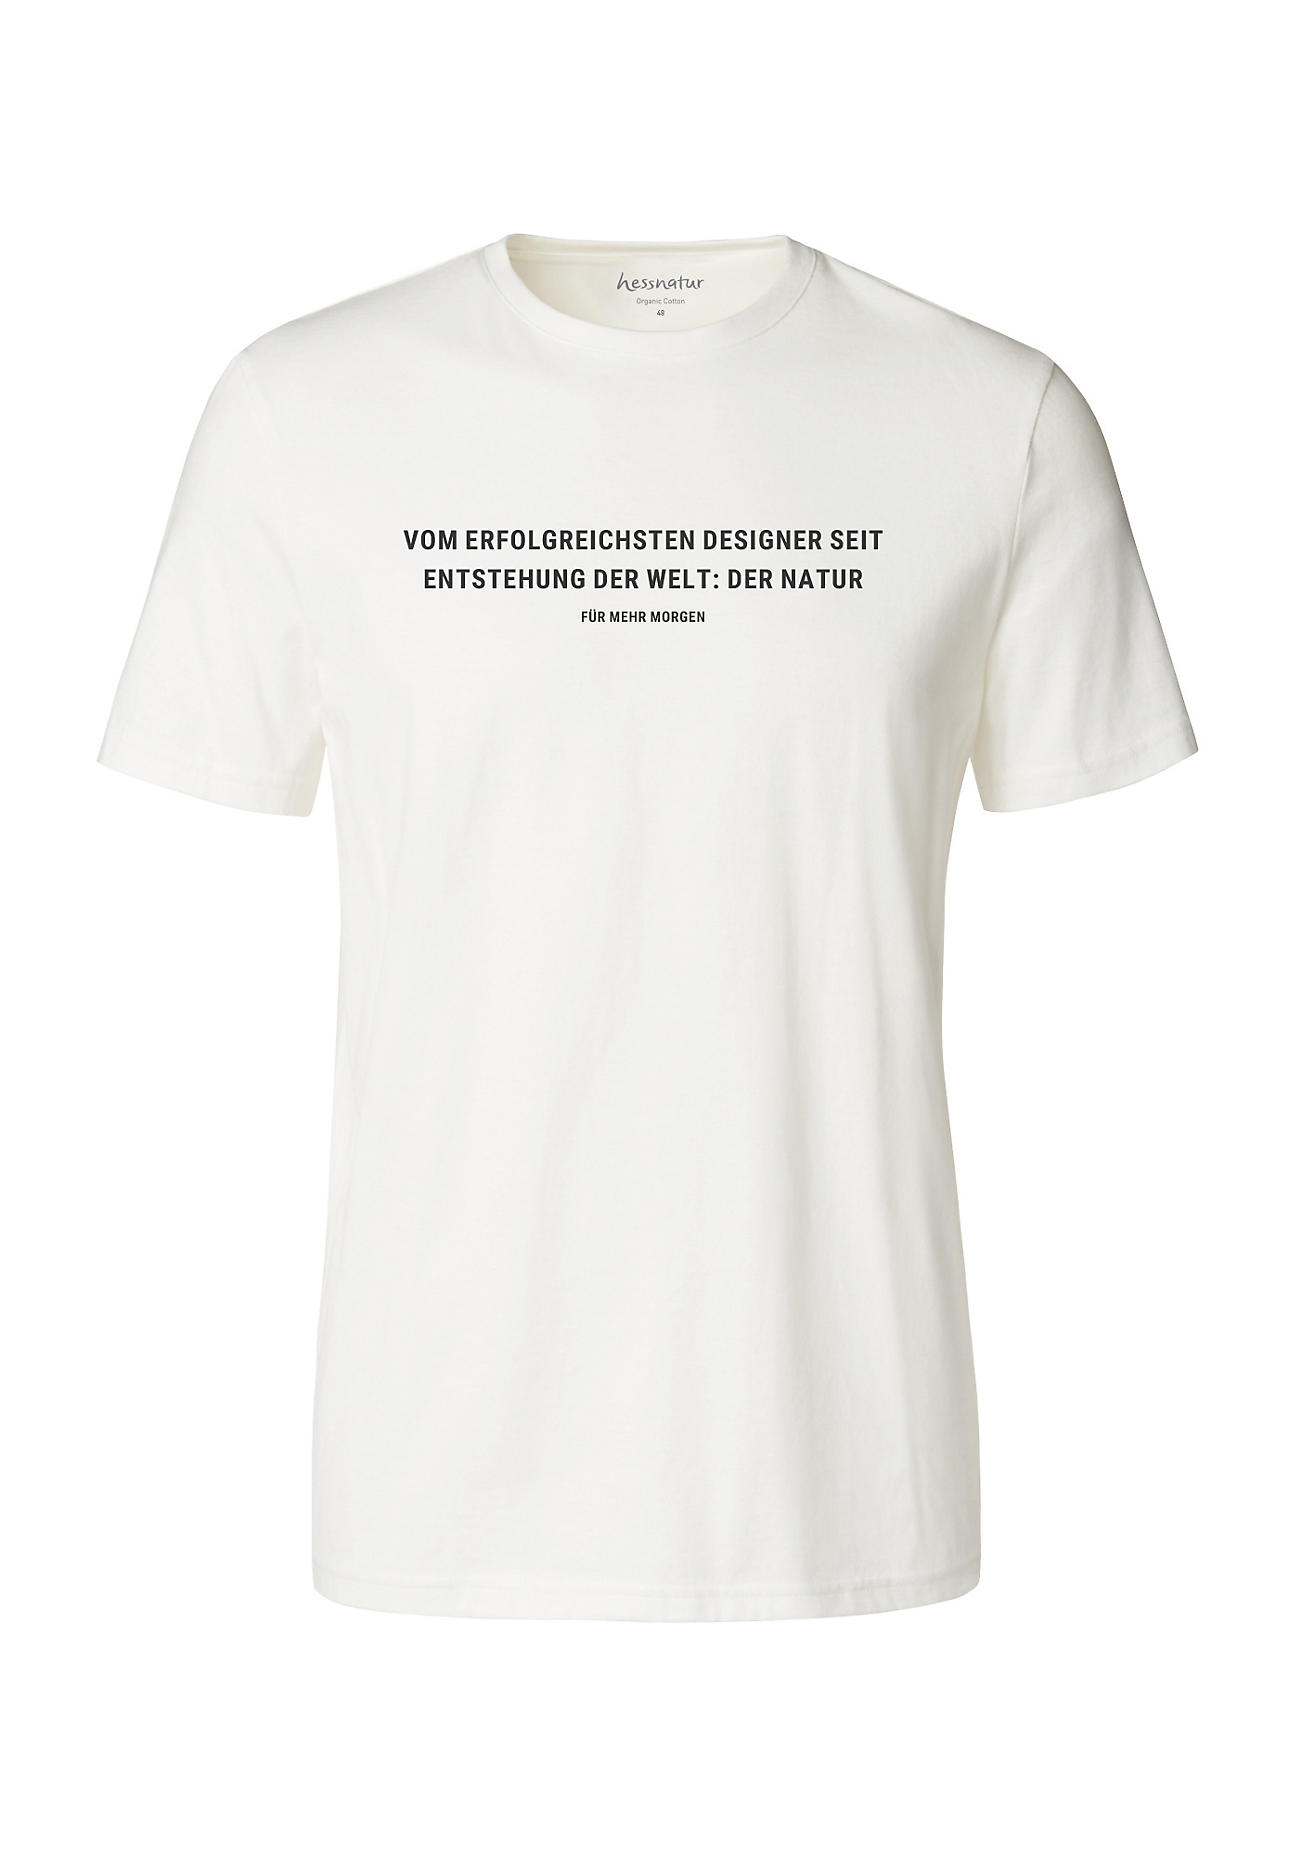 hessnatur Herren Statement Shirt aus Bio-Baumwolle - weiß Grösse52 von hessnatur